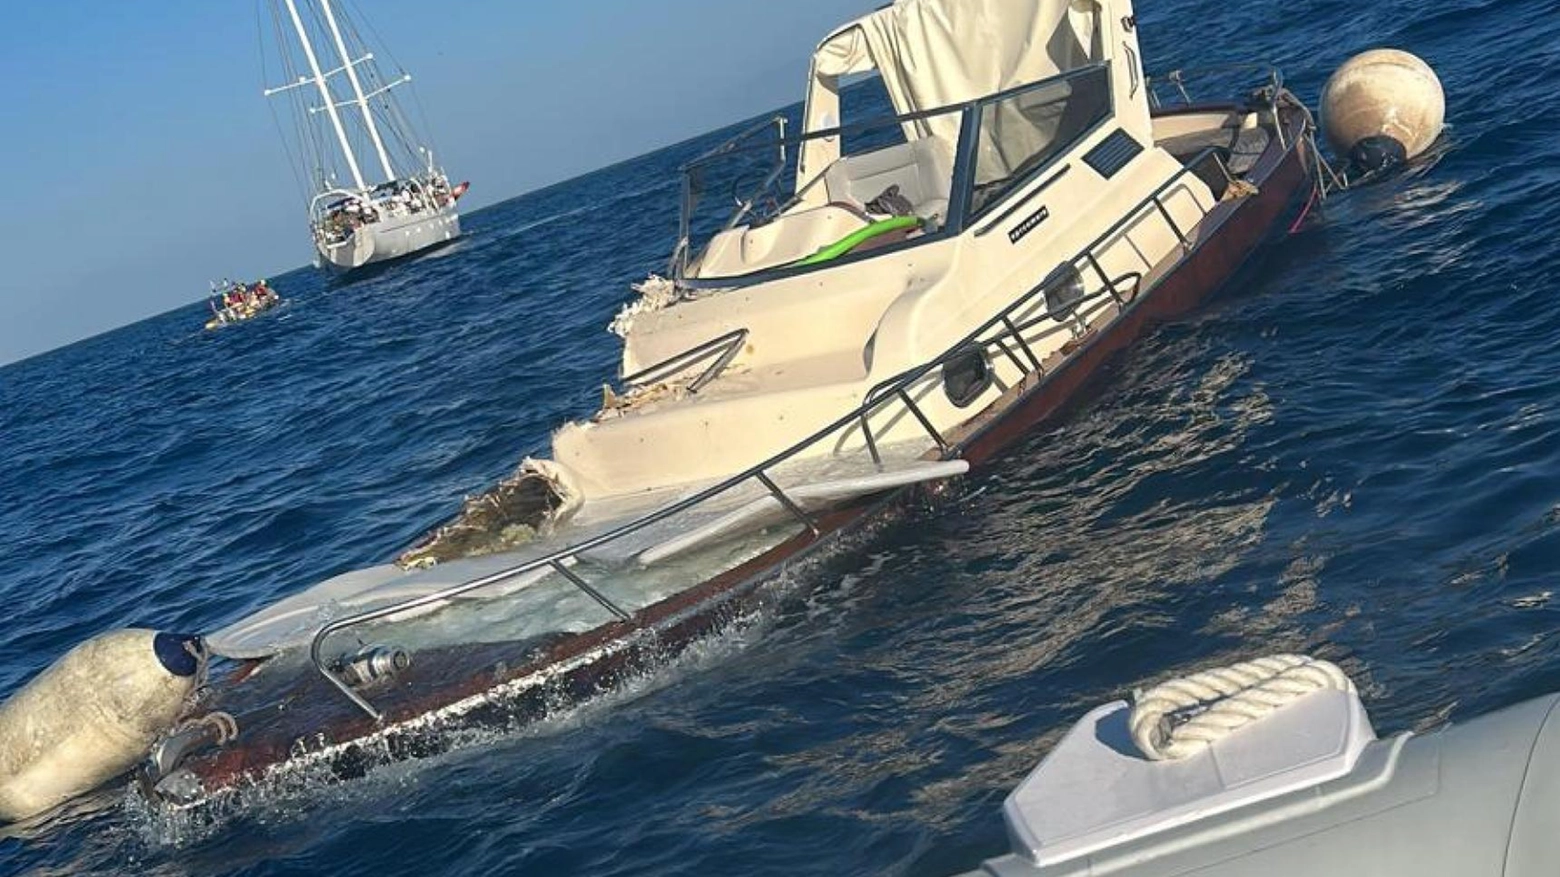 Turista morta ad Amalfi  Indagato lo skipper  Il pm: omicidio colposo